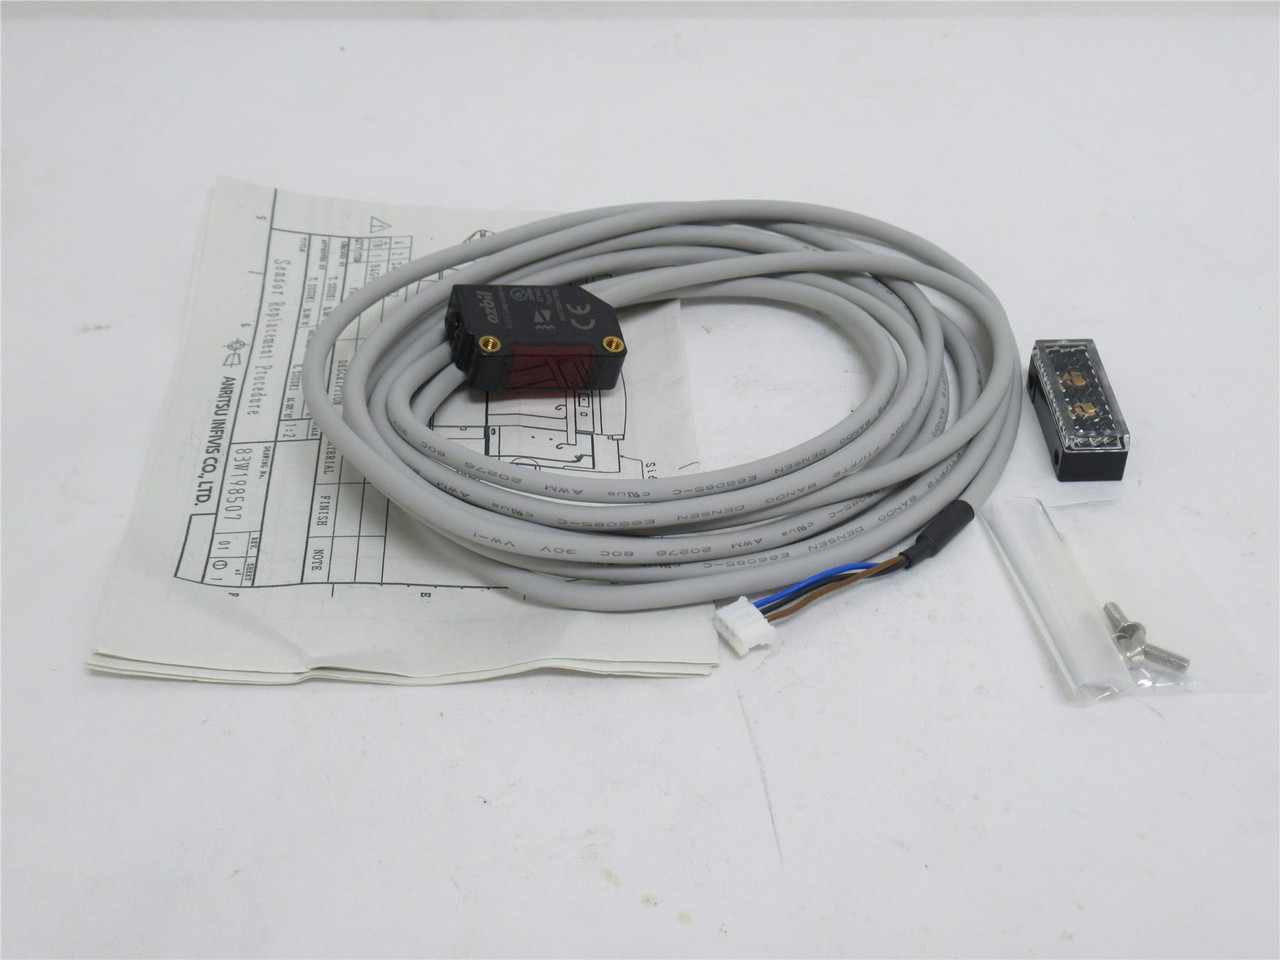 Azbil HP7-P13-L050; Photo Sensor 4VDC; 5m Wire; 5m Detection